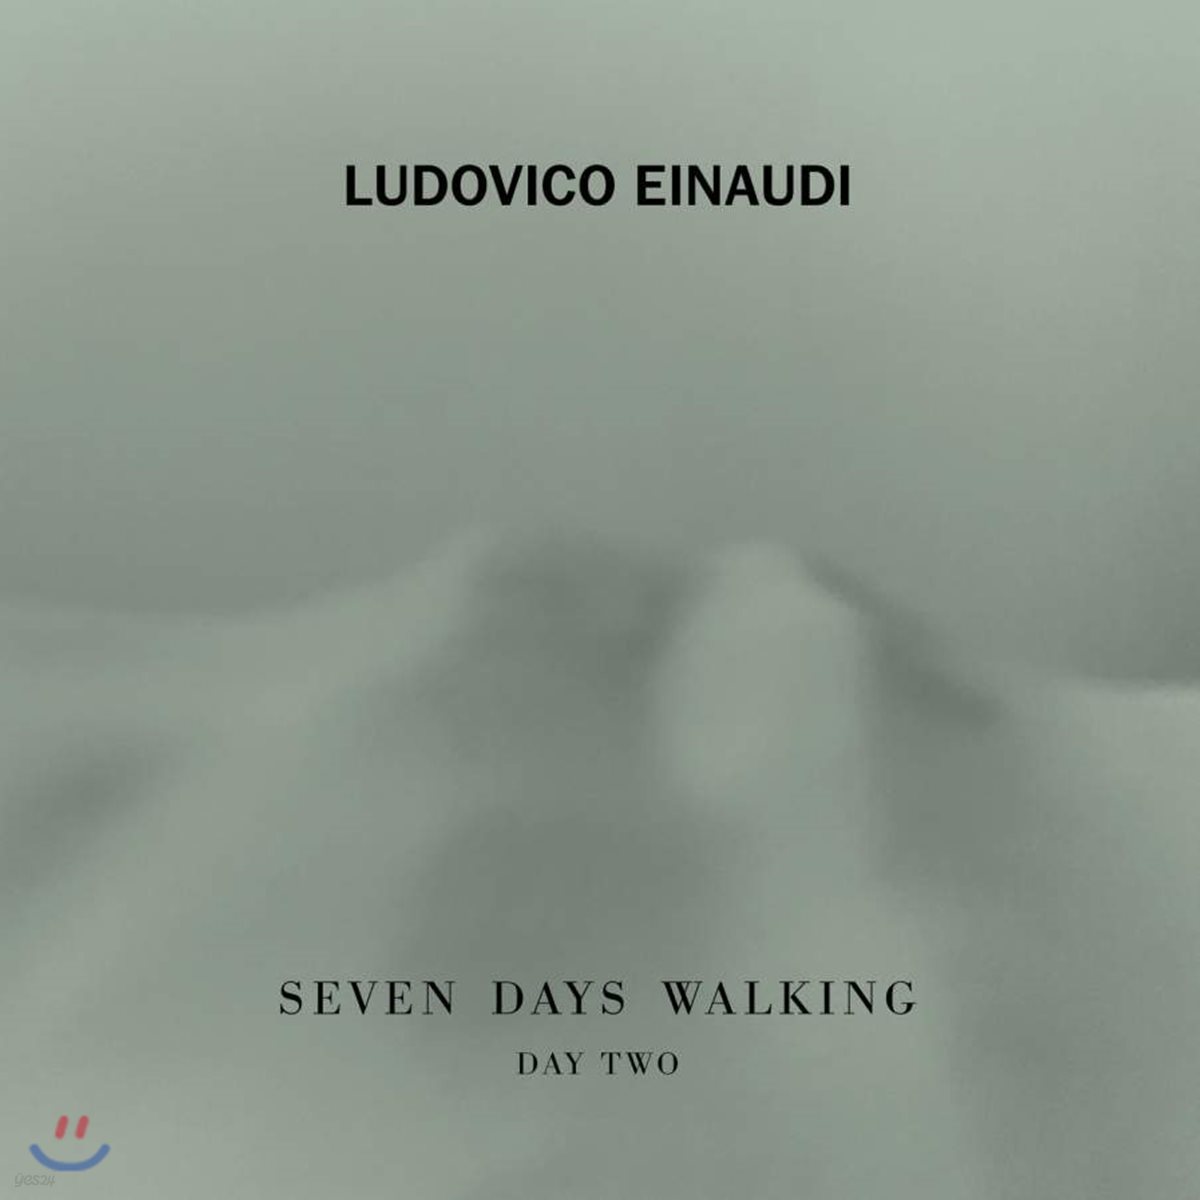 루도비코 에이나우디 - 7일 간의 산책, 두 번째 날 (Ludovico Einaudi - Seven Days Walking, Day 2)